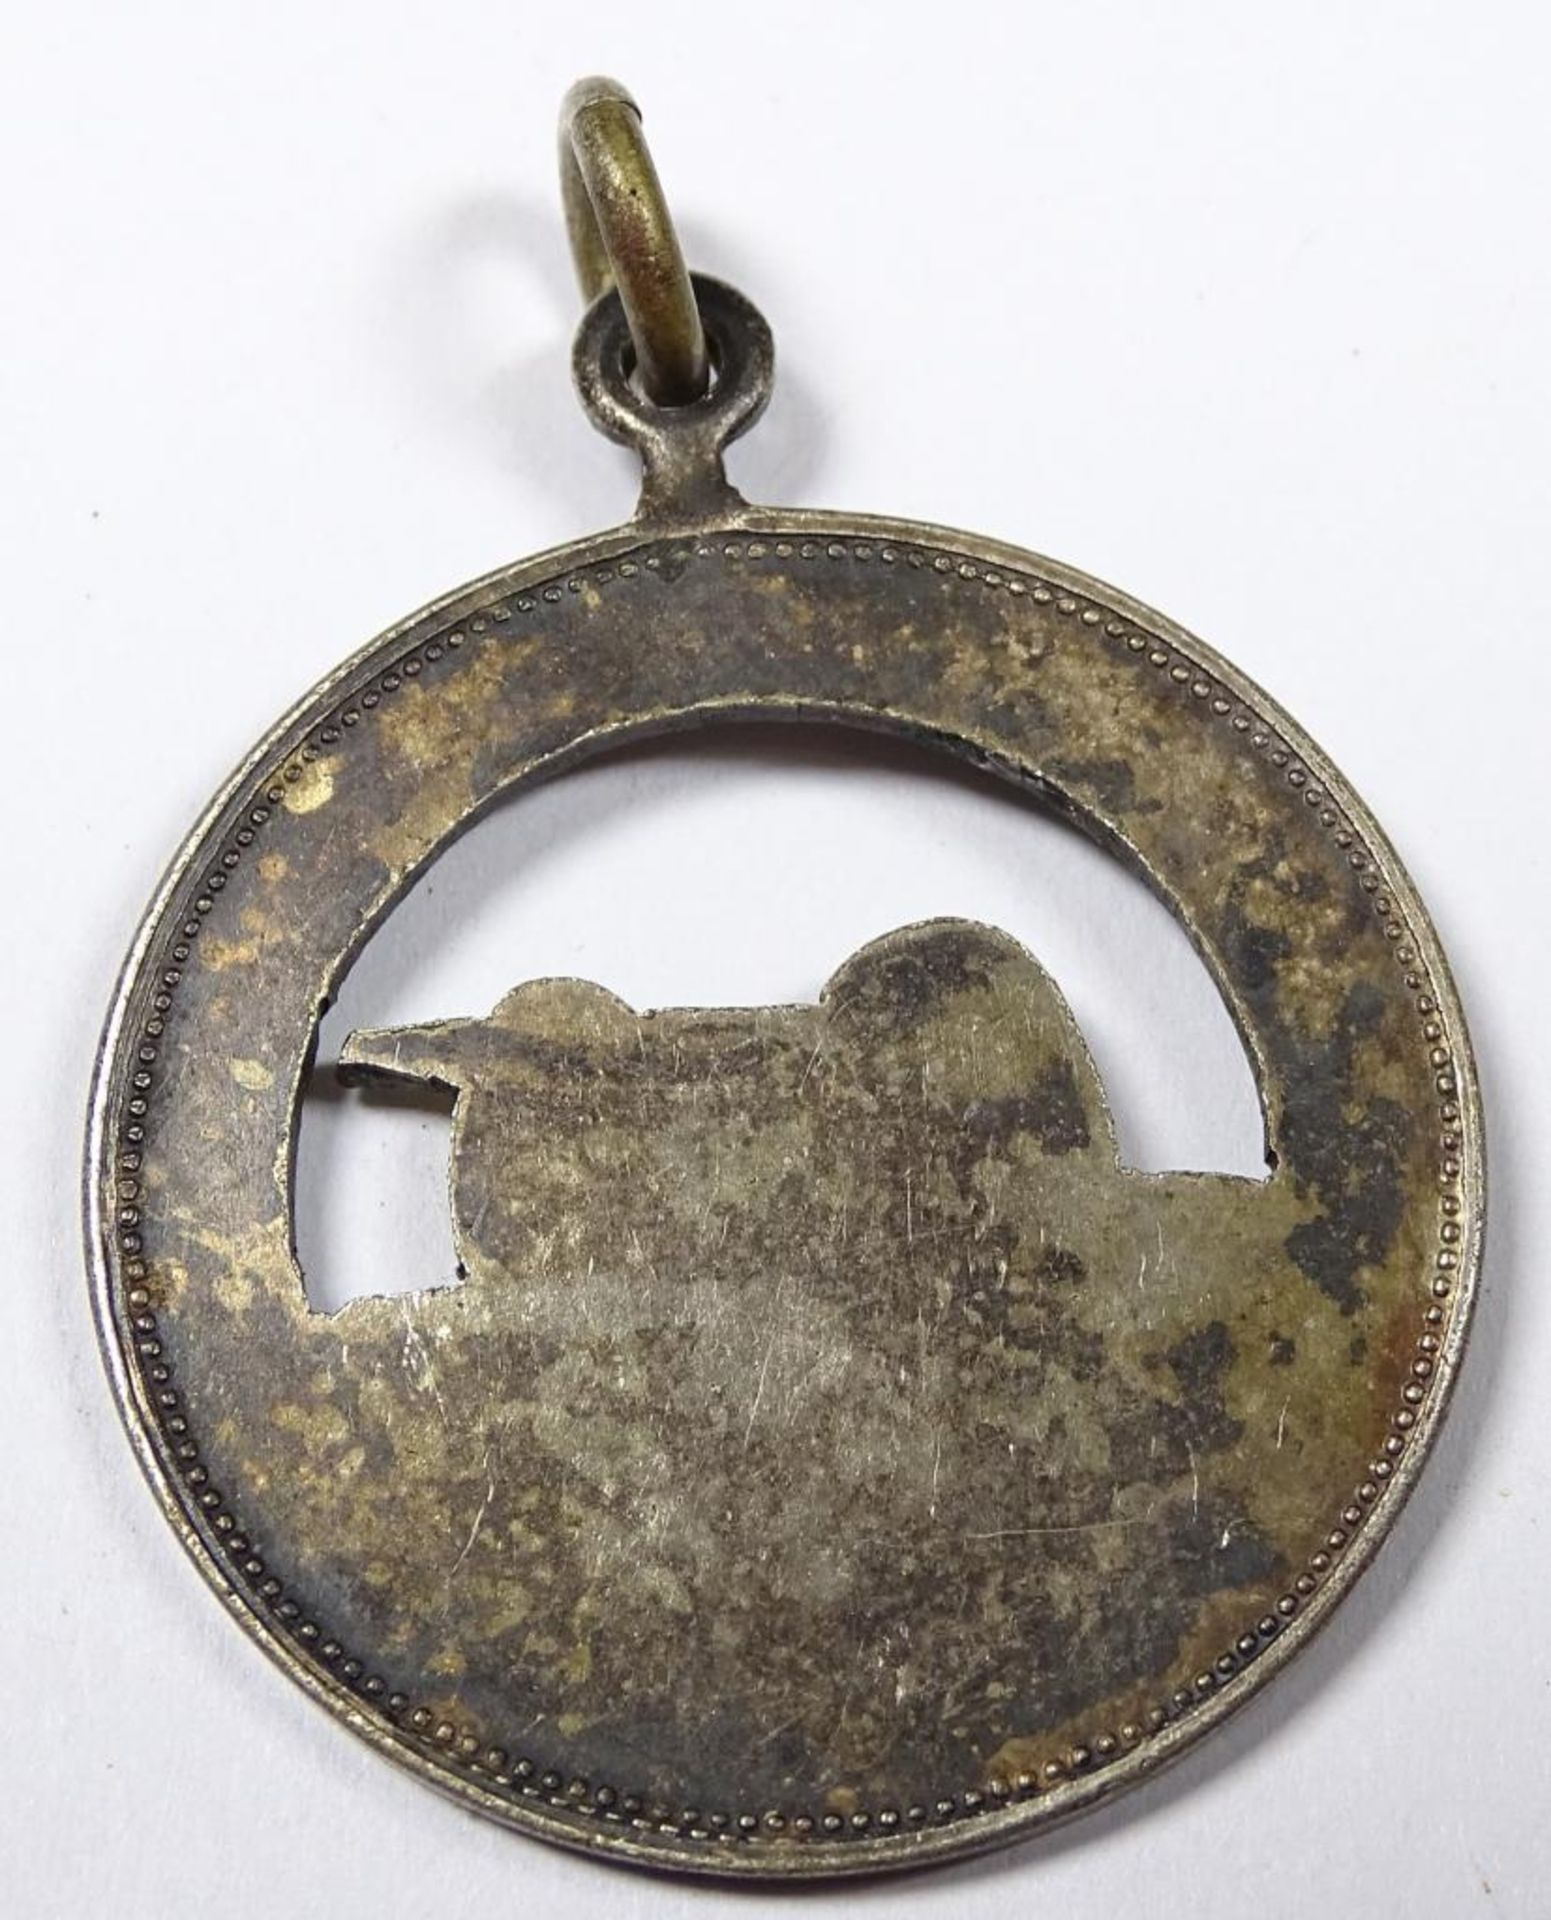 Kaiserliches Artillerie Abzeichen,Medaille "Sektion Essen",Silber vergoldet,nicht gestempelt - Bild 2 aus 2